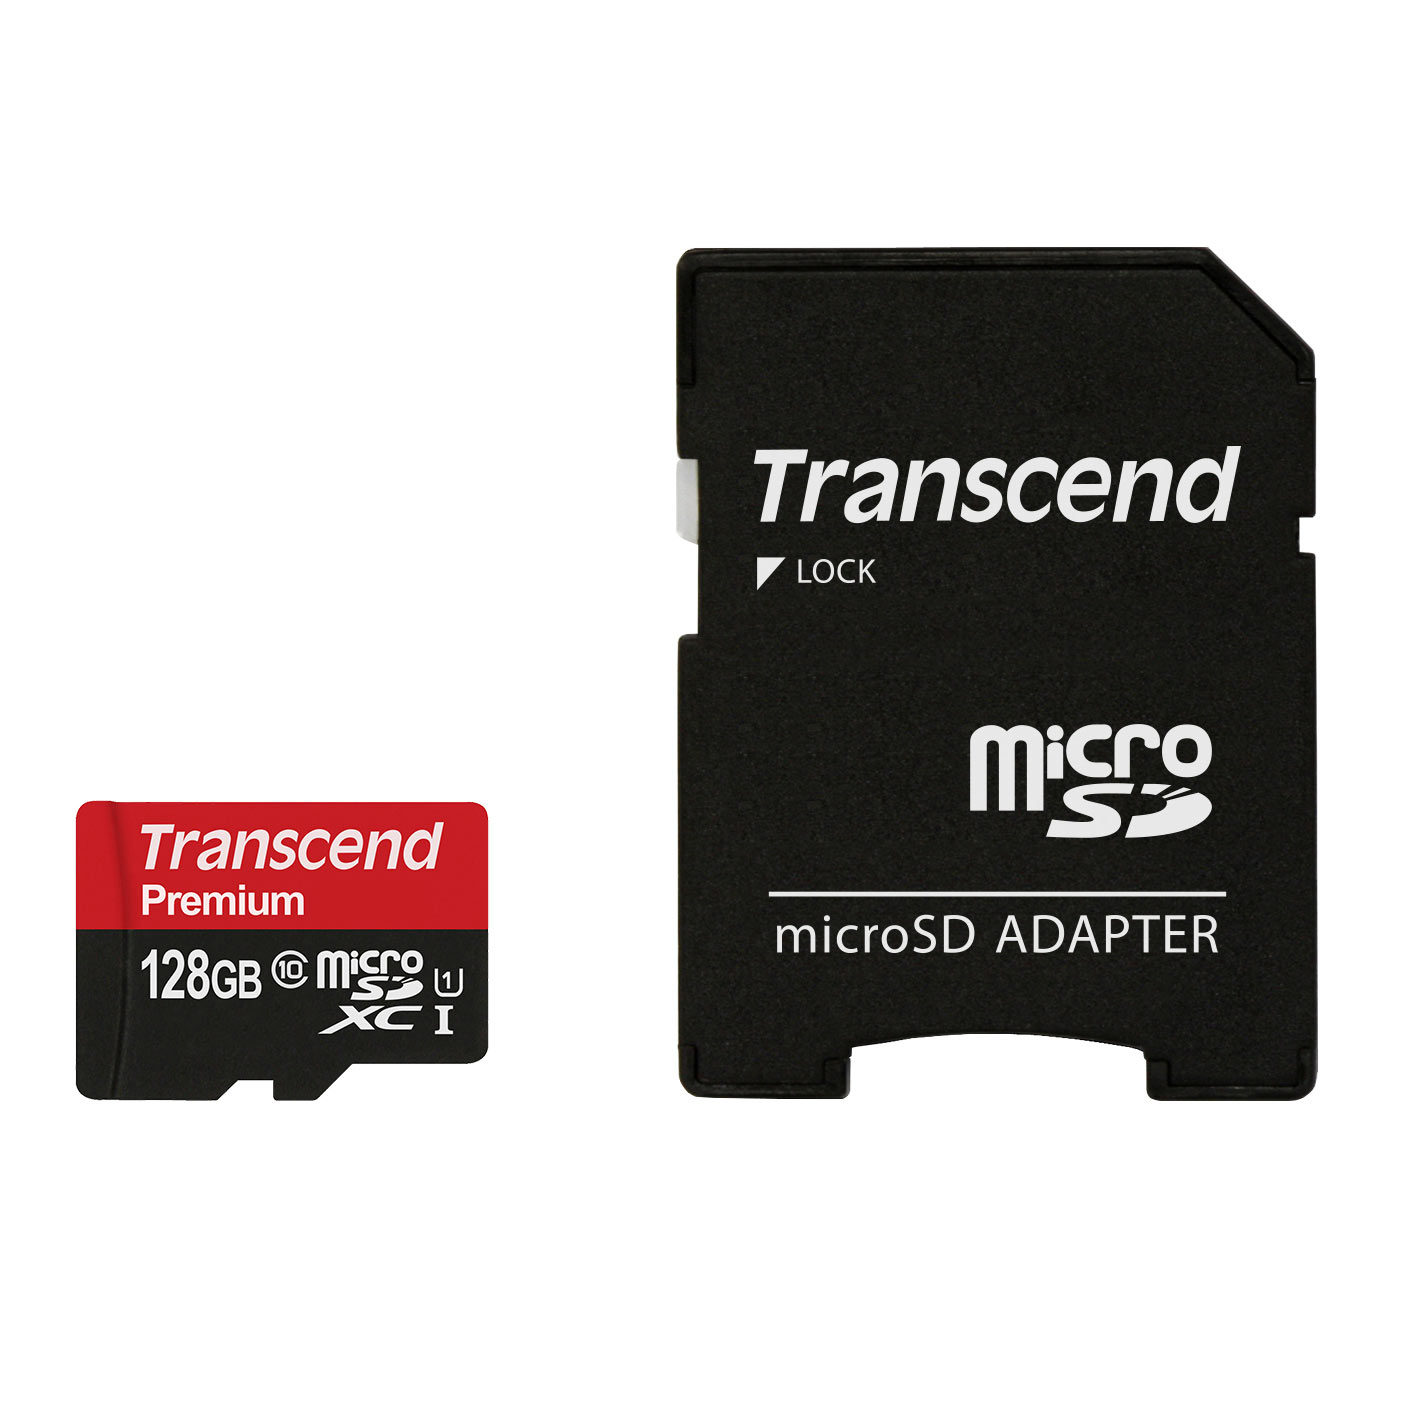 Micro SDマイクロsdカード 128GB 4枚セット アダプター付き